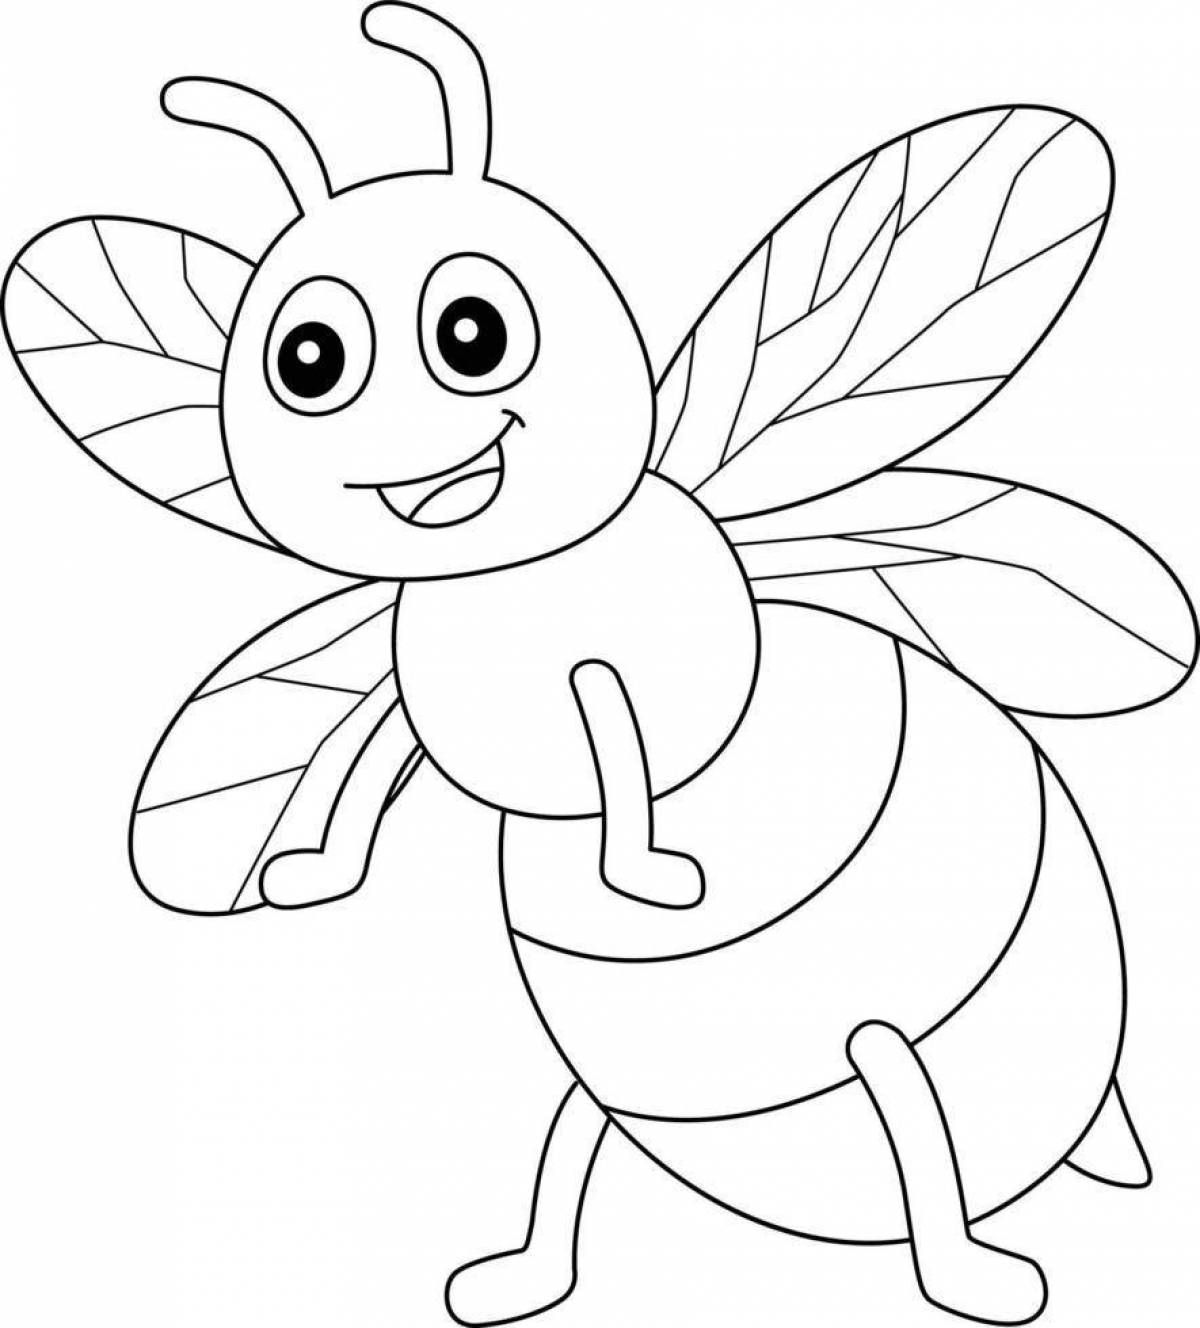 Раскраска веселая пчелка для детей 3-4 лет